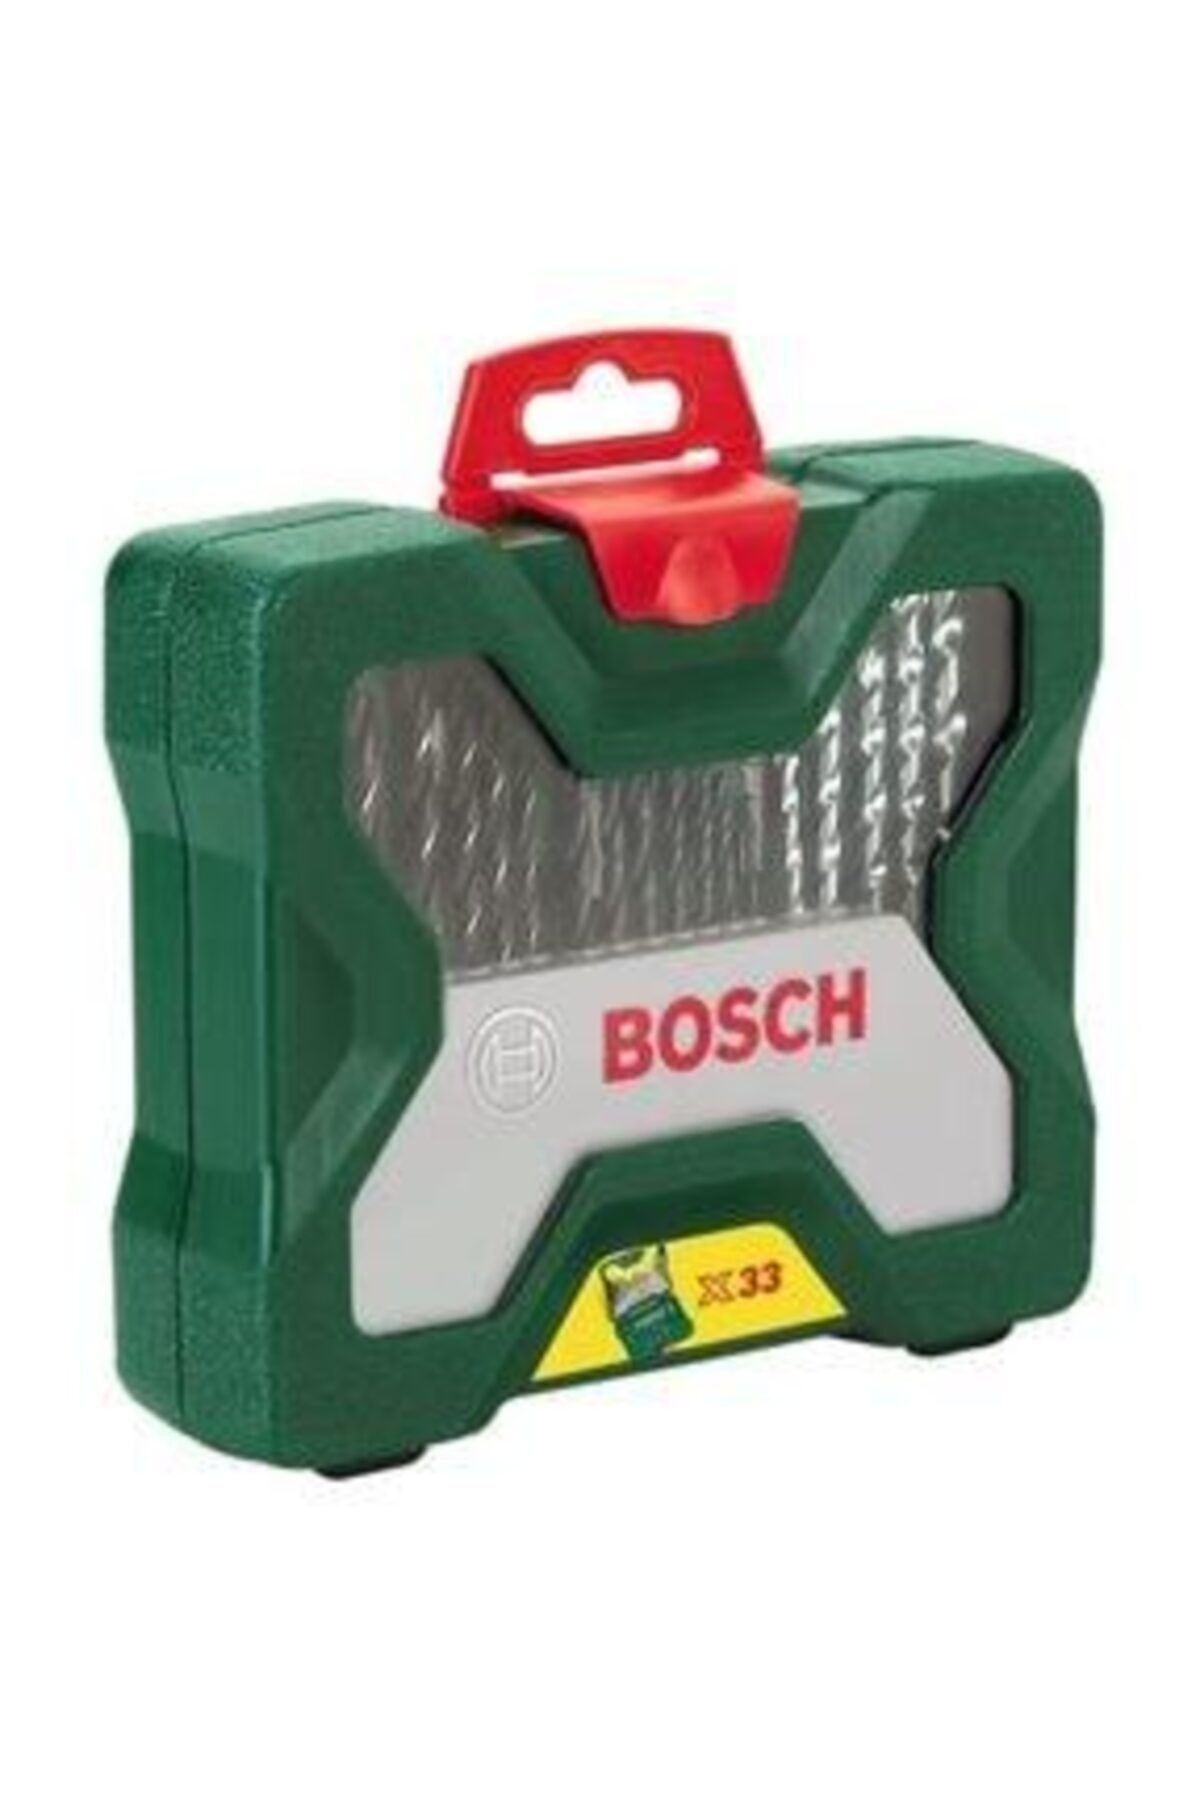 Bosch Aksesuar Seti 33 Parça